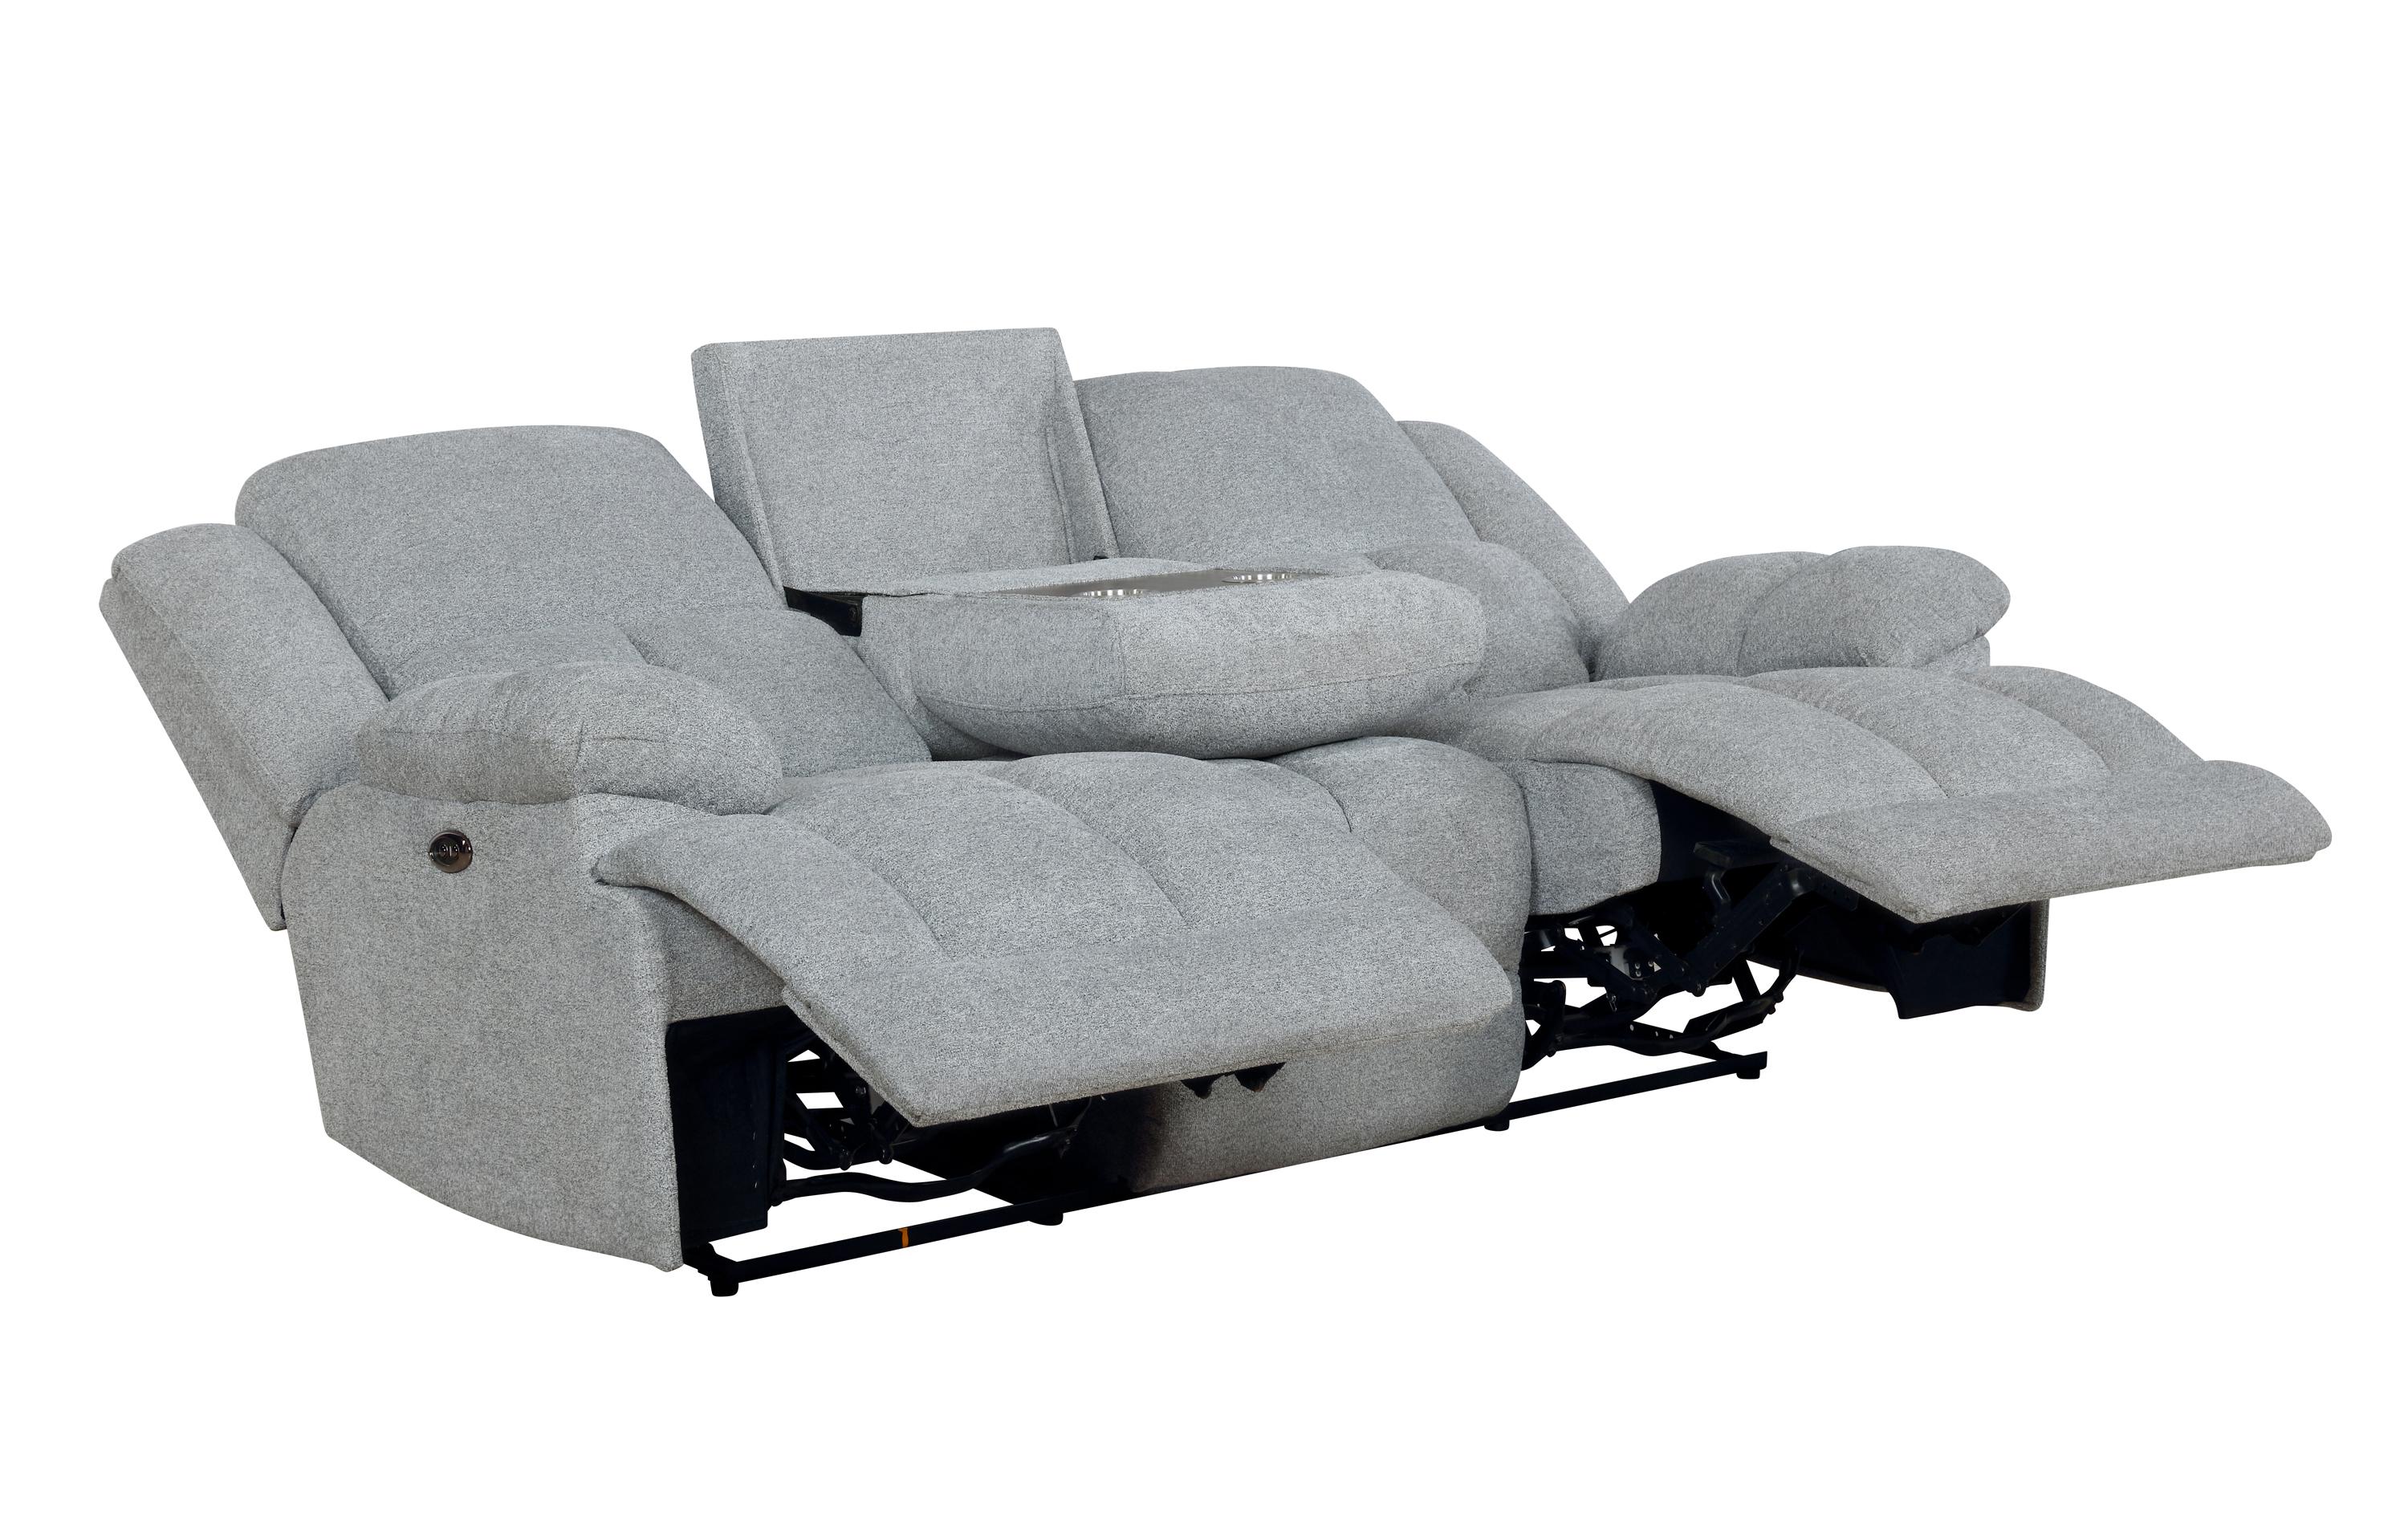 

    
Coaster 602561P Waterbury Power sofa Gray 602561P
